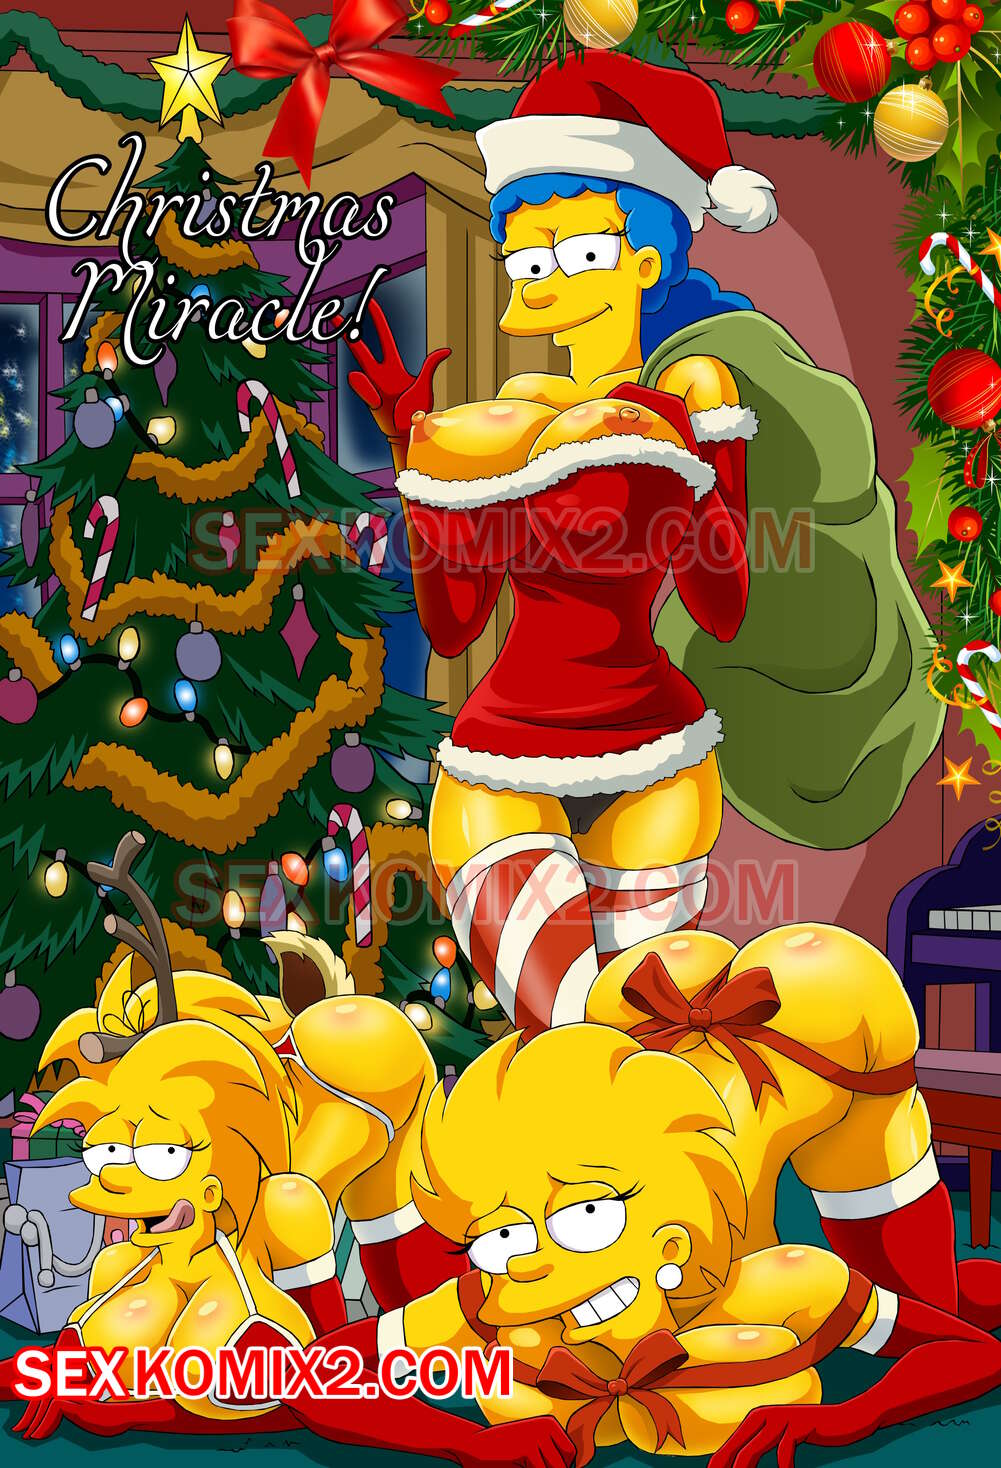 Xxx Hd 200011 - âœ…ï¸ Porn comic The Simpsons. Christmas Miracle. by sexkomix2.com. | Comics  porno en espaÃ±ol solo para adultos | sexkomix2.com